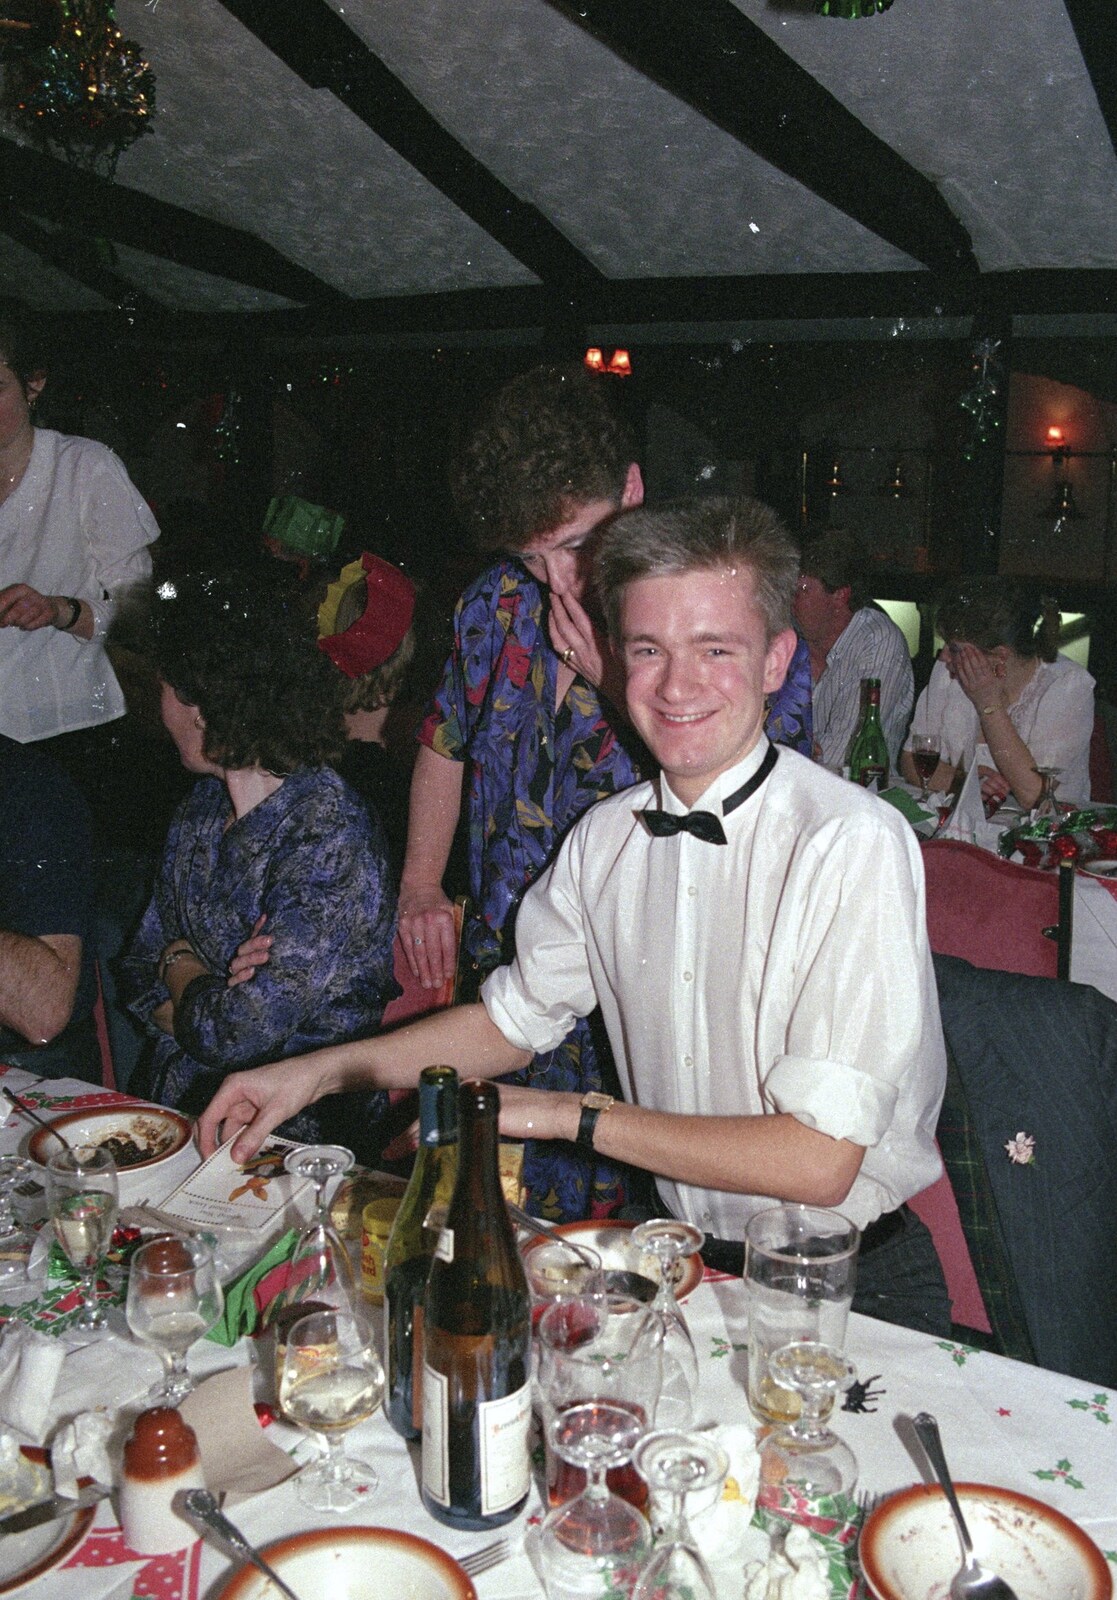 Nosher again from Printec's Christmas Dinner, Harleston, Norfolk - 22nd December 1990